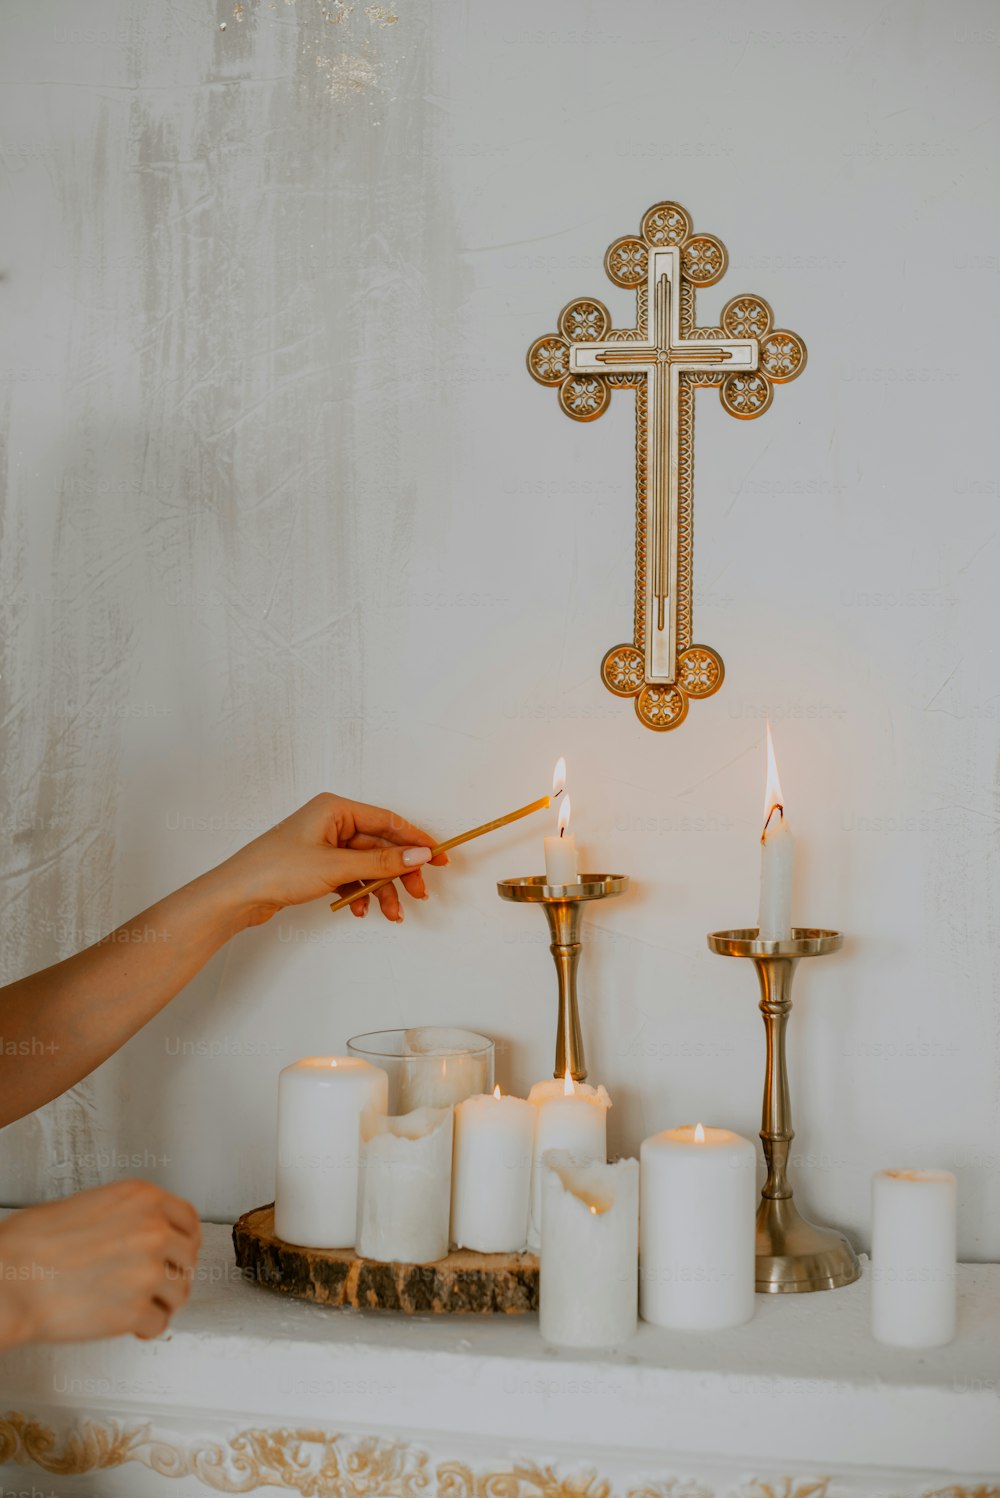 uma pessoa acendendo velas na frente de uma cruz